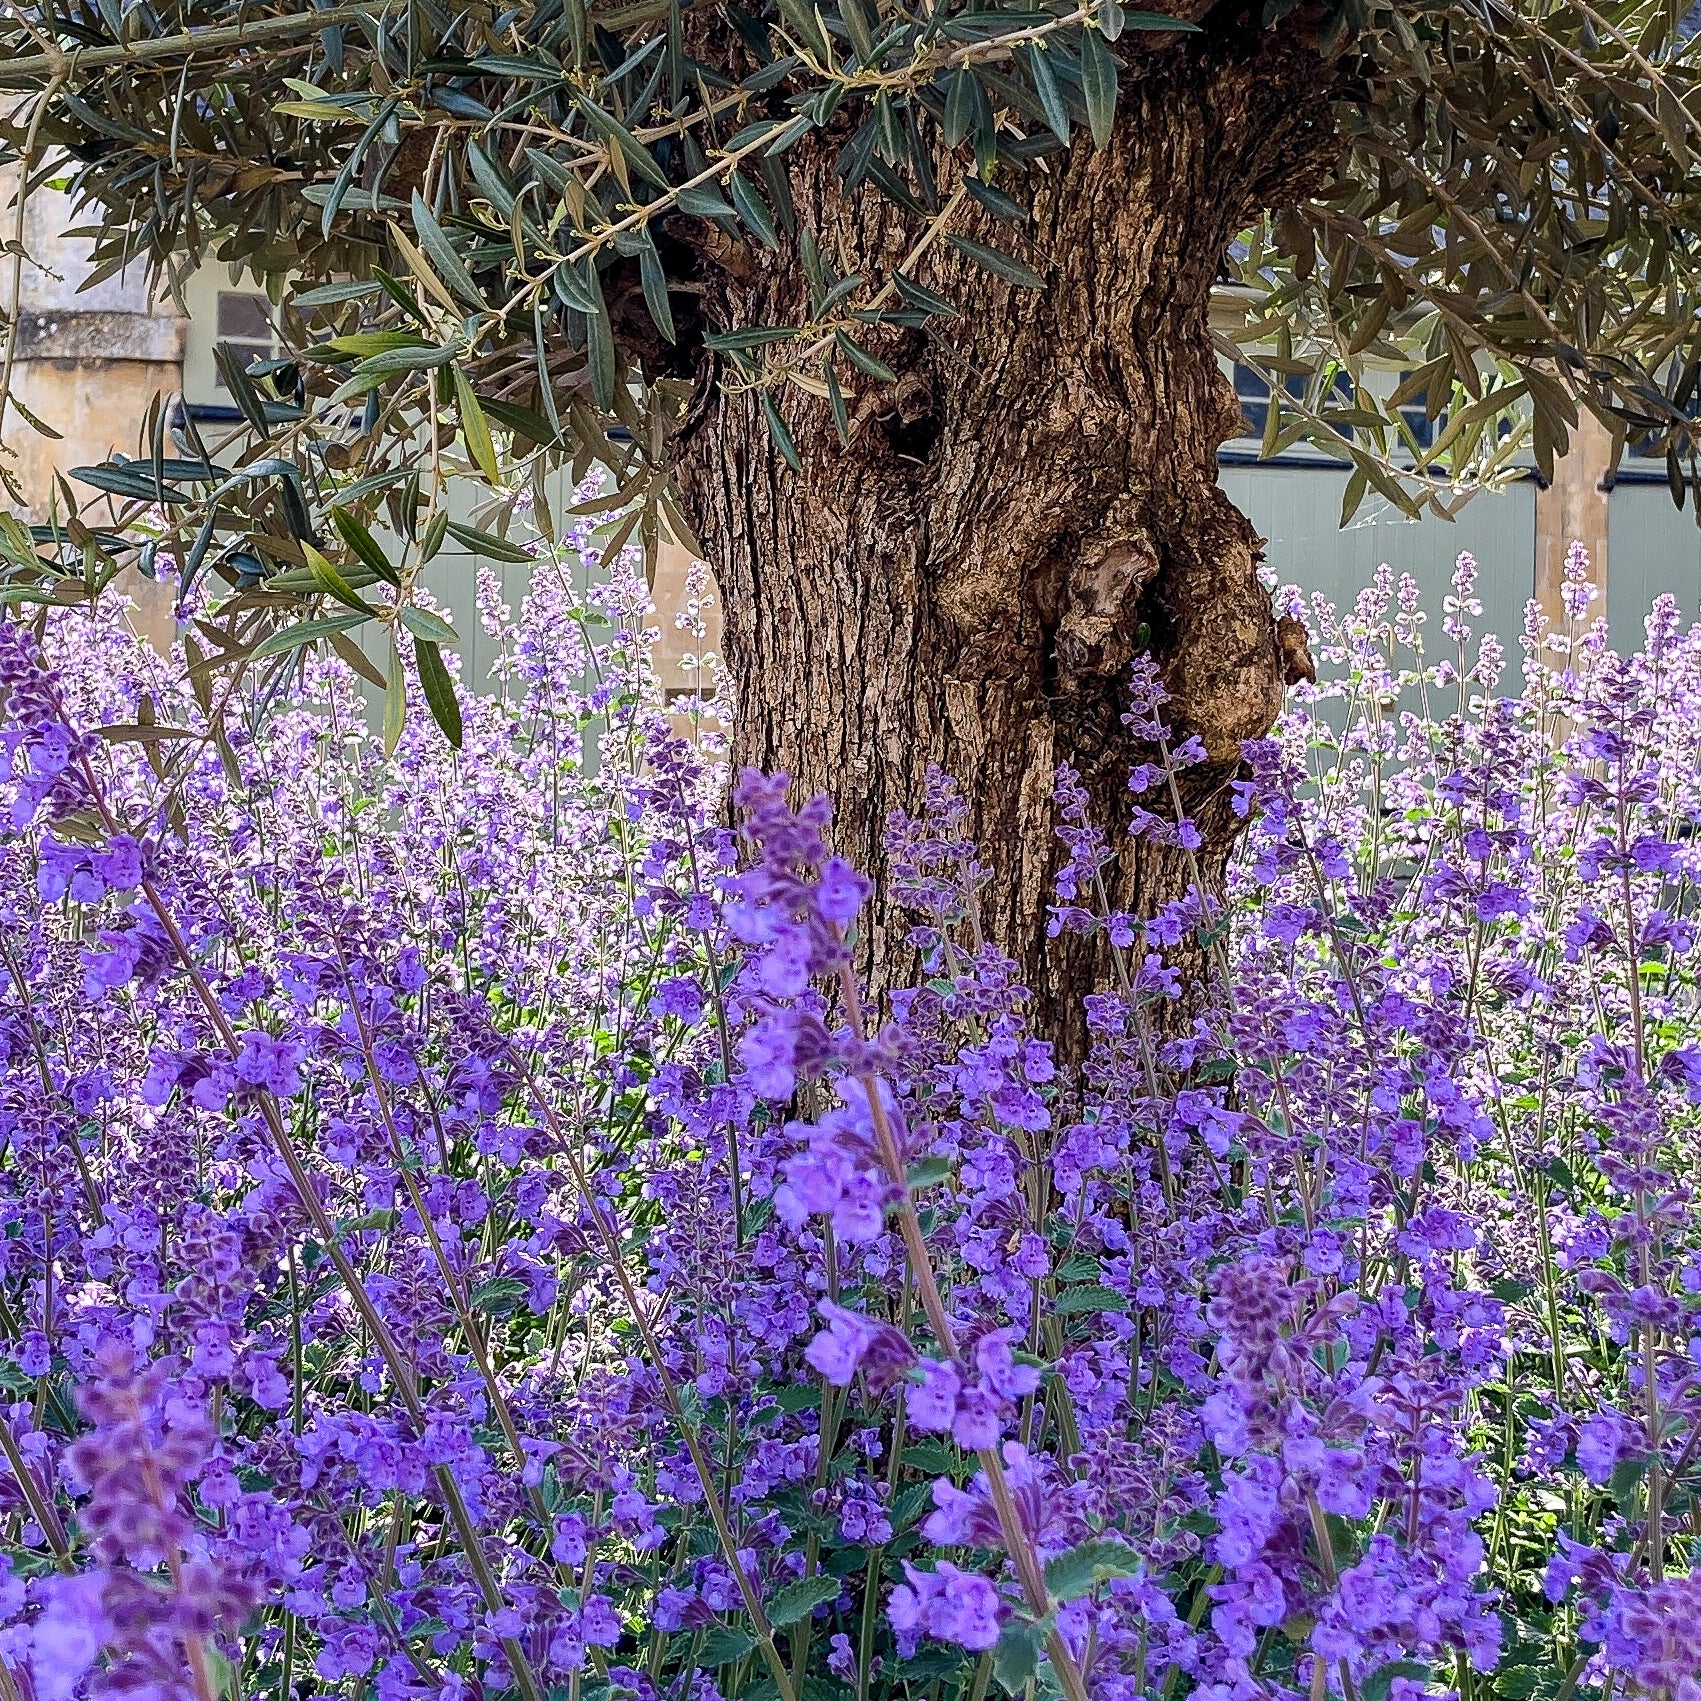 Purple Salvias around an Olive Tree